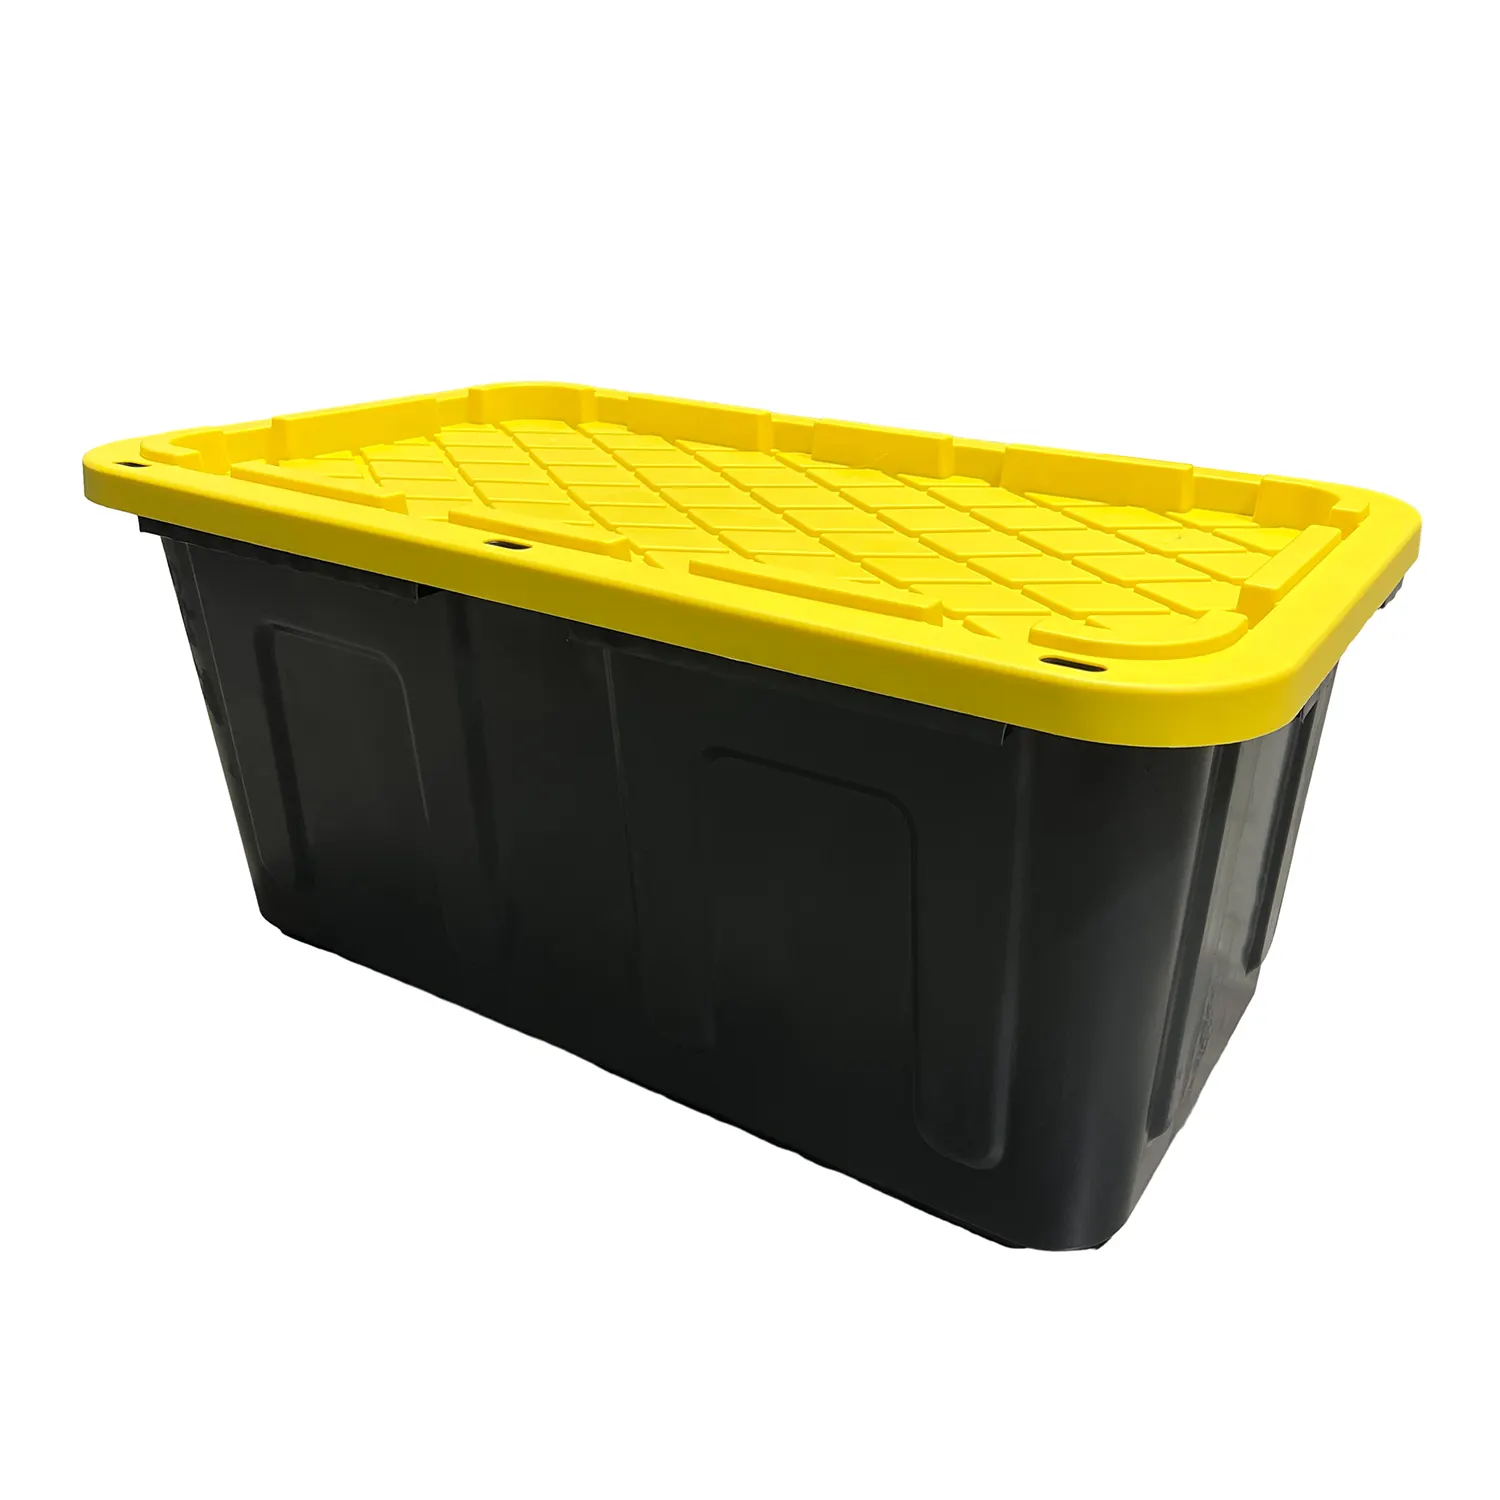 Büyük sert kutu 27 Gal galon aracı sarı kapaklı istiflenebilir depolama kılıf